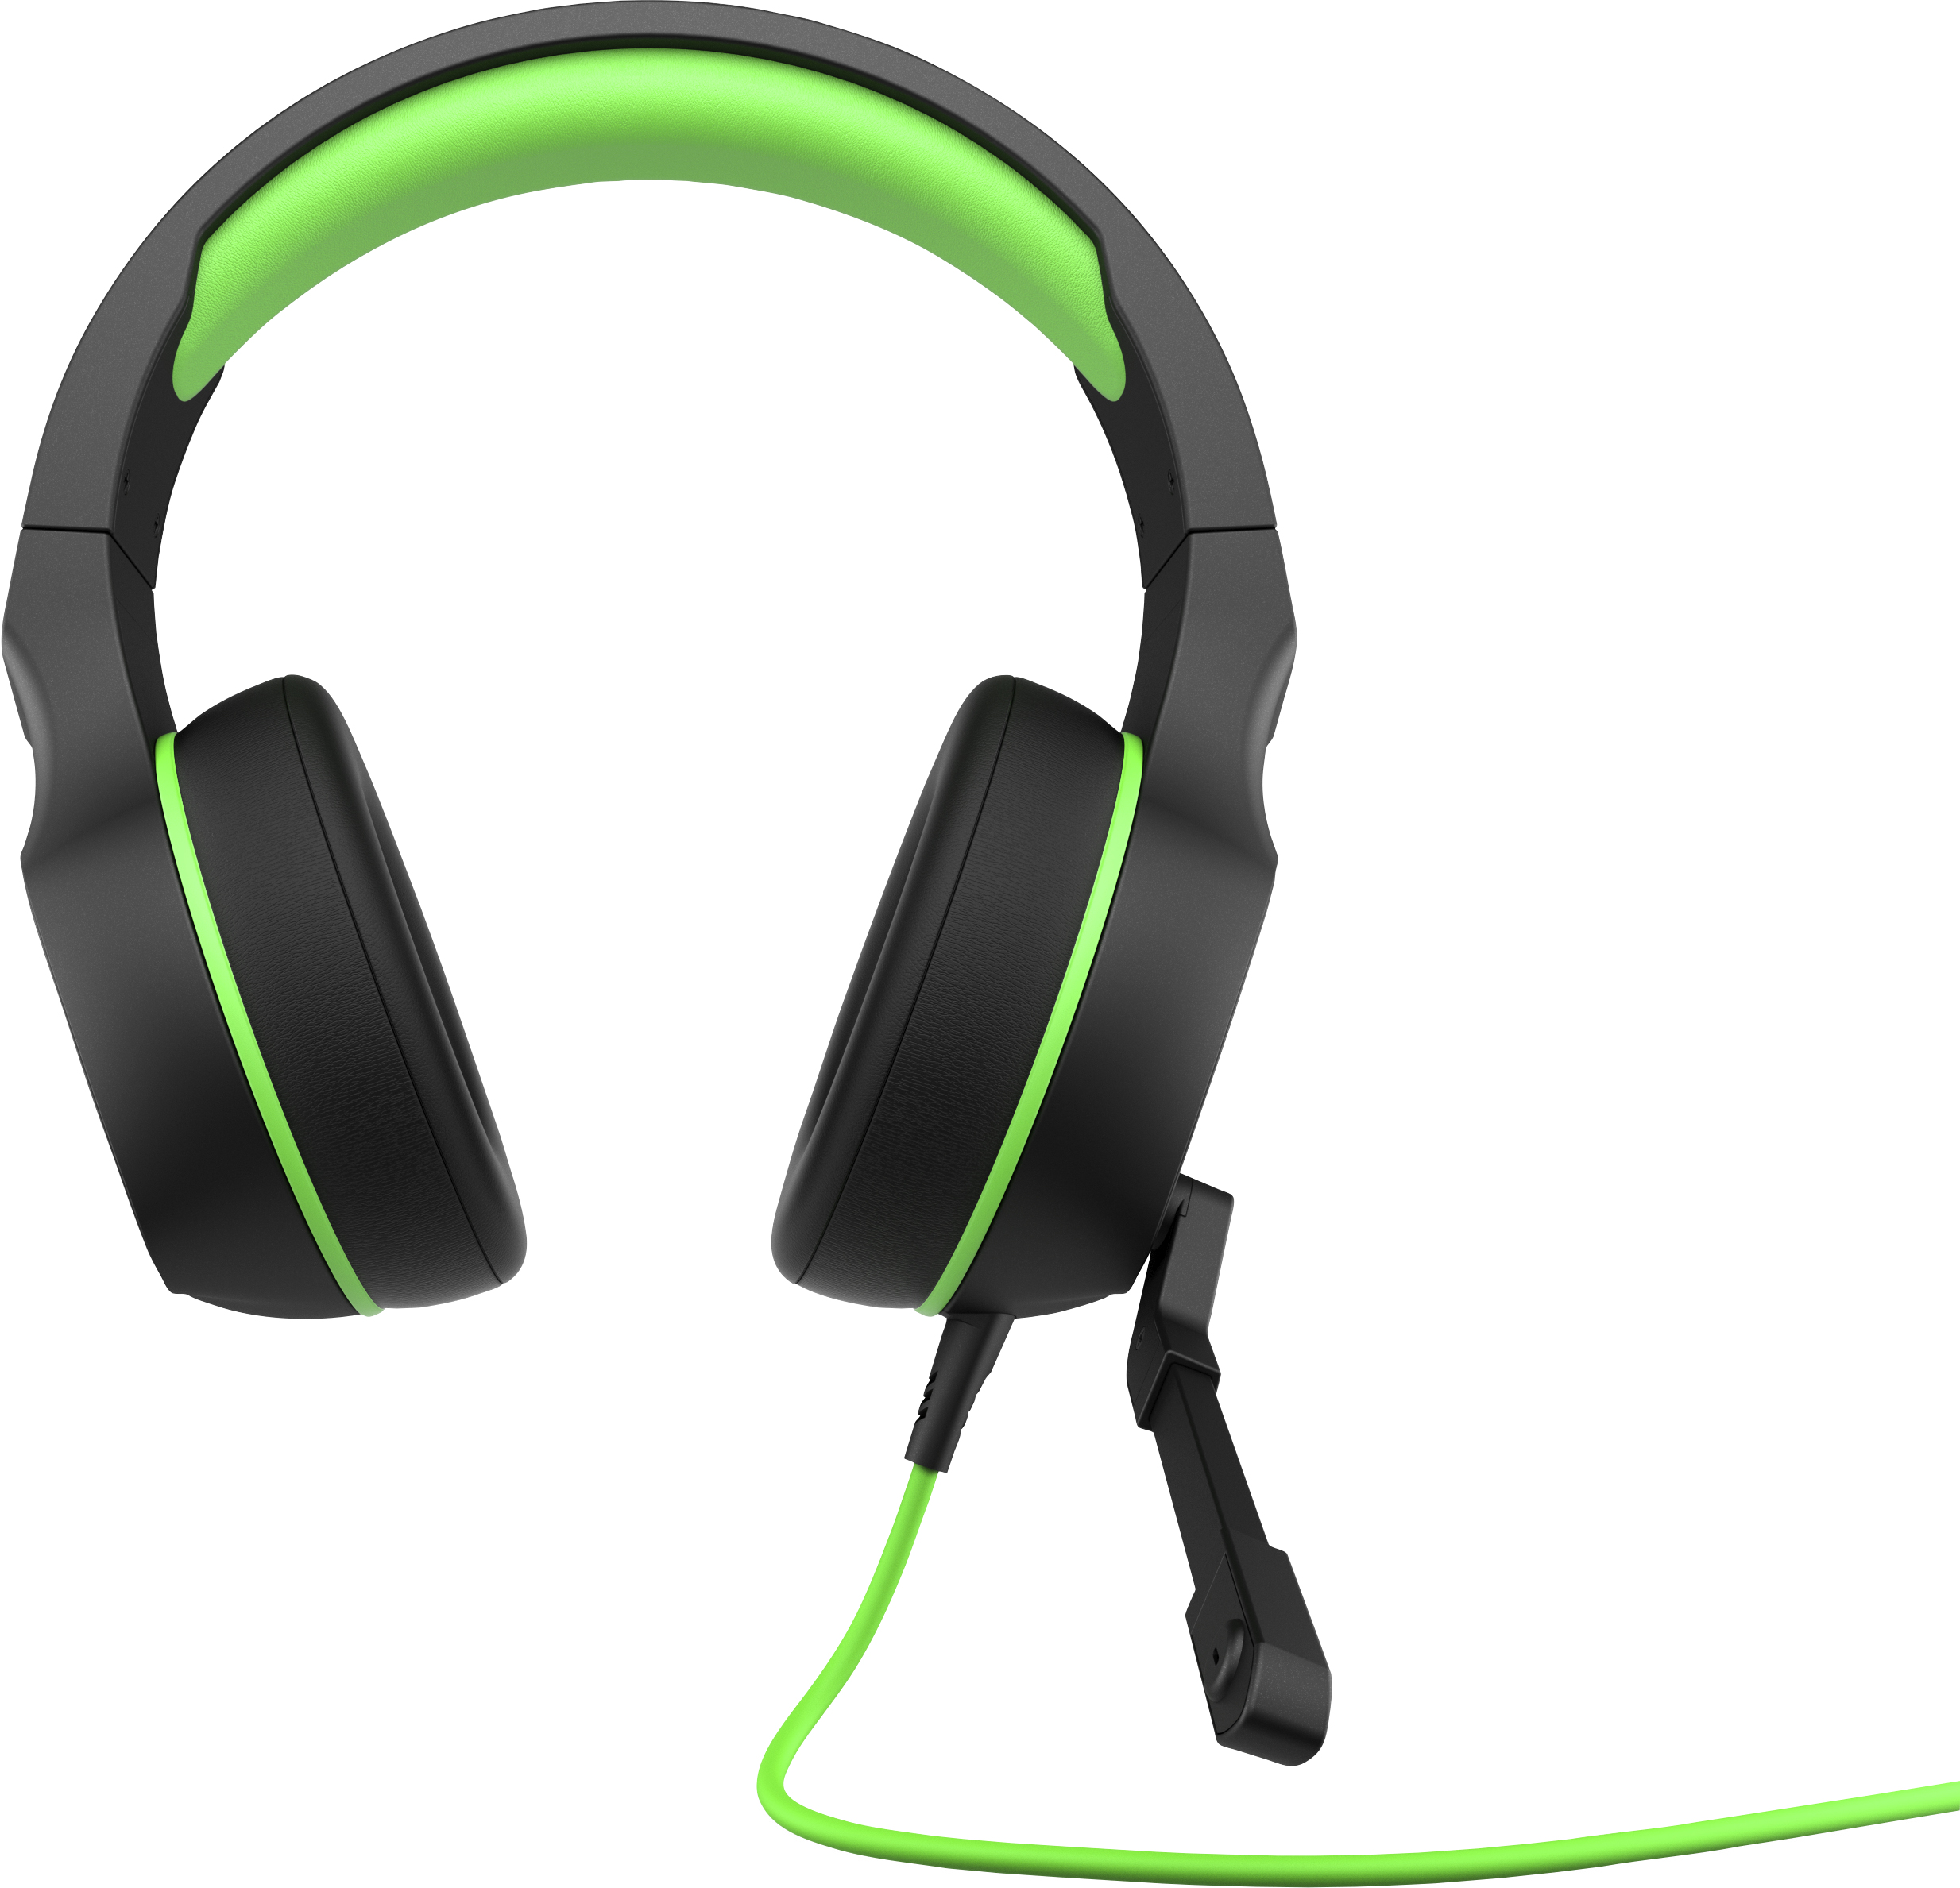 Auriculares Gaming Y cable hp pavilion 400 headset compatible consolas xbox ps verde negro sonido controles integrados en el conector de 3.5 mm talla pcps4ps5xboxswitchmovil